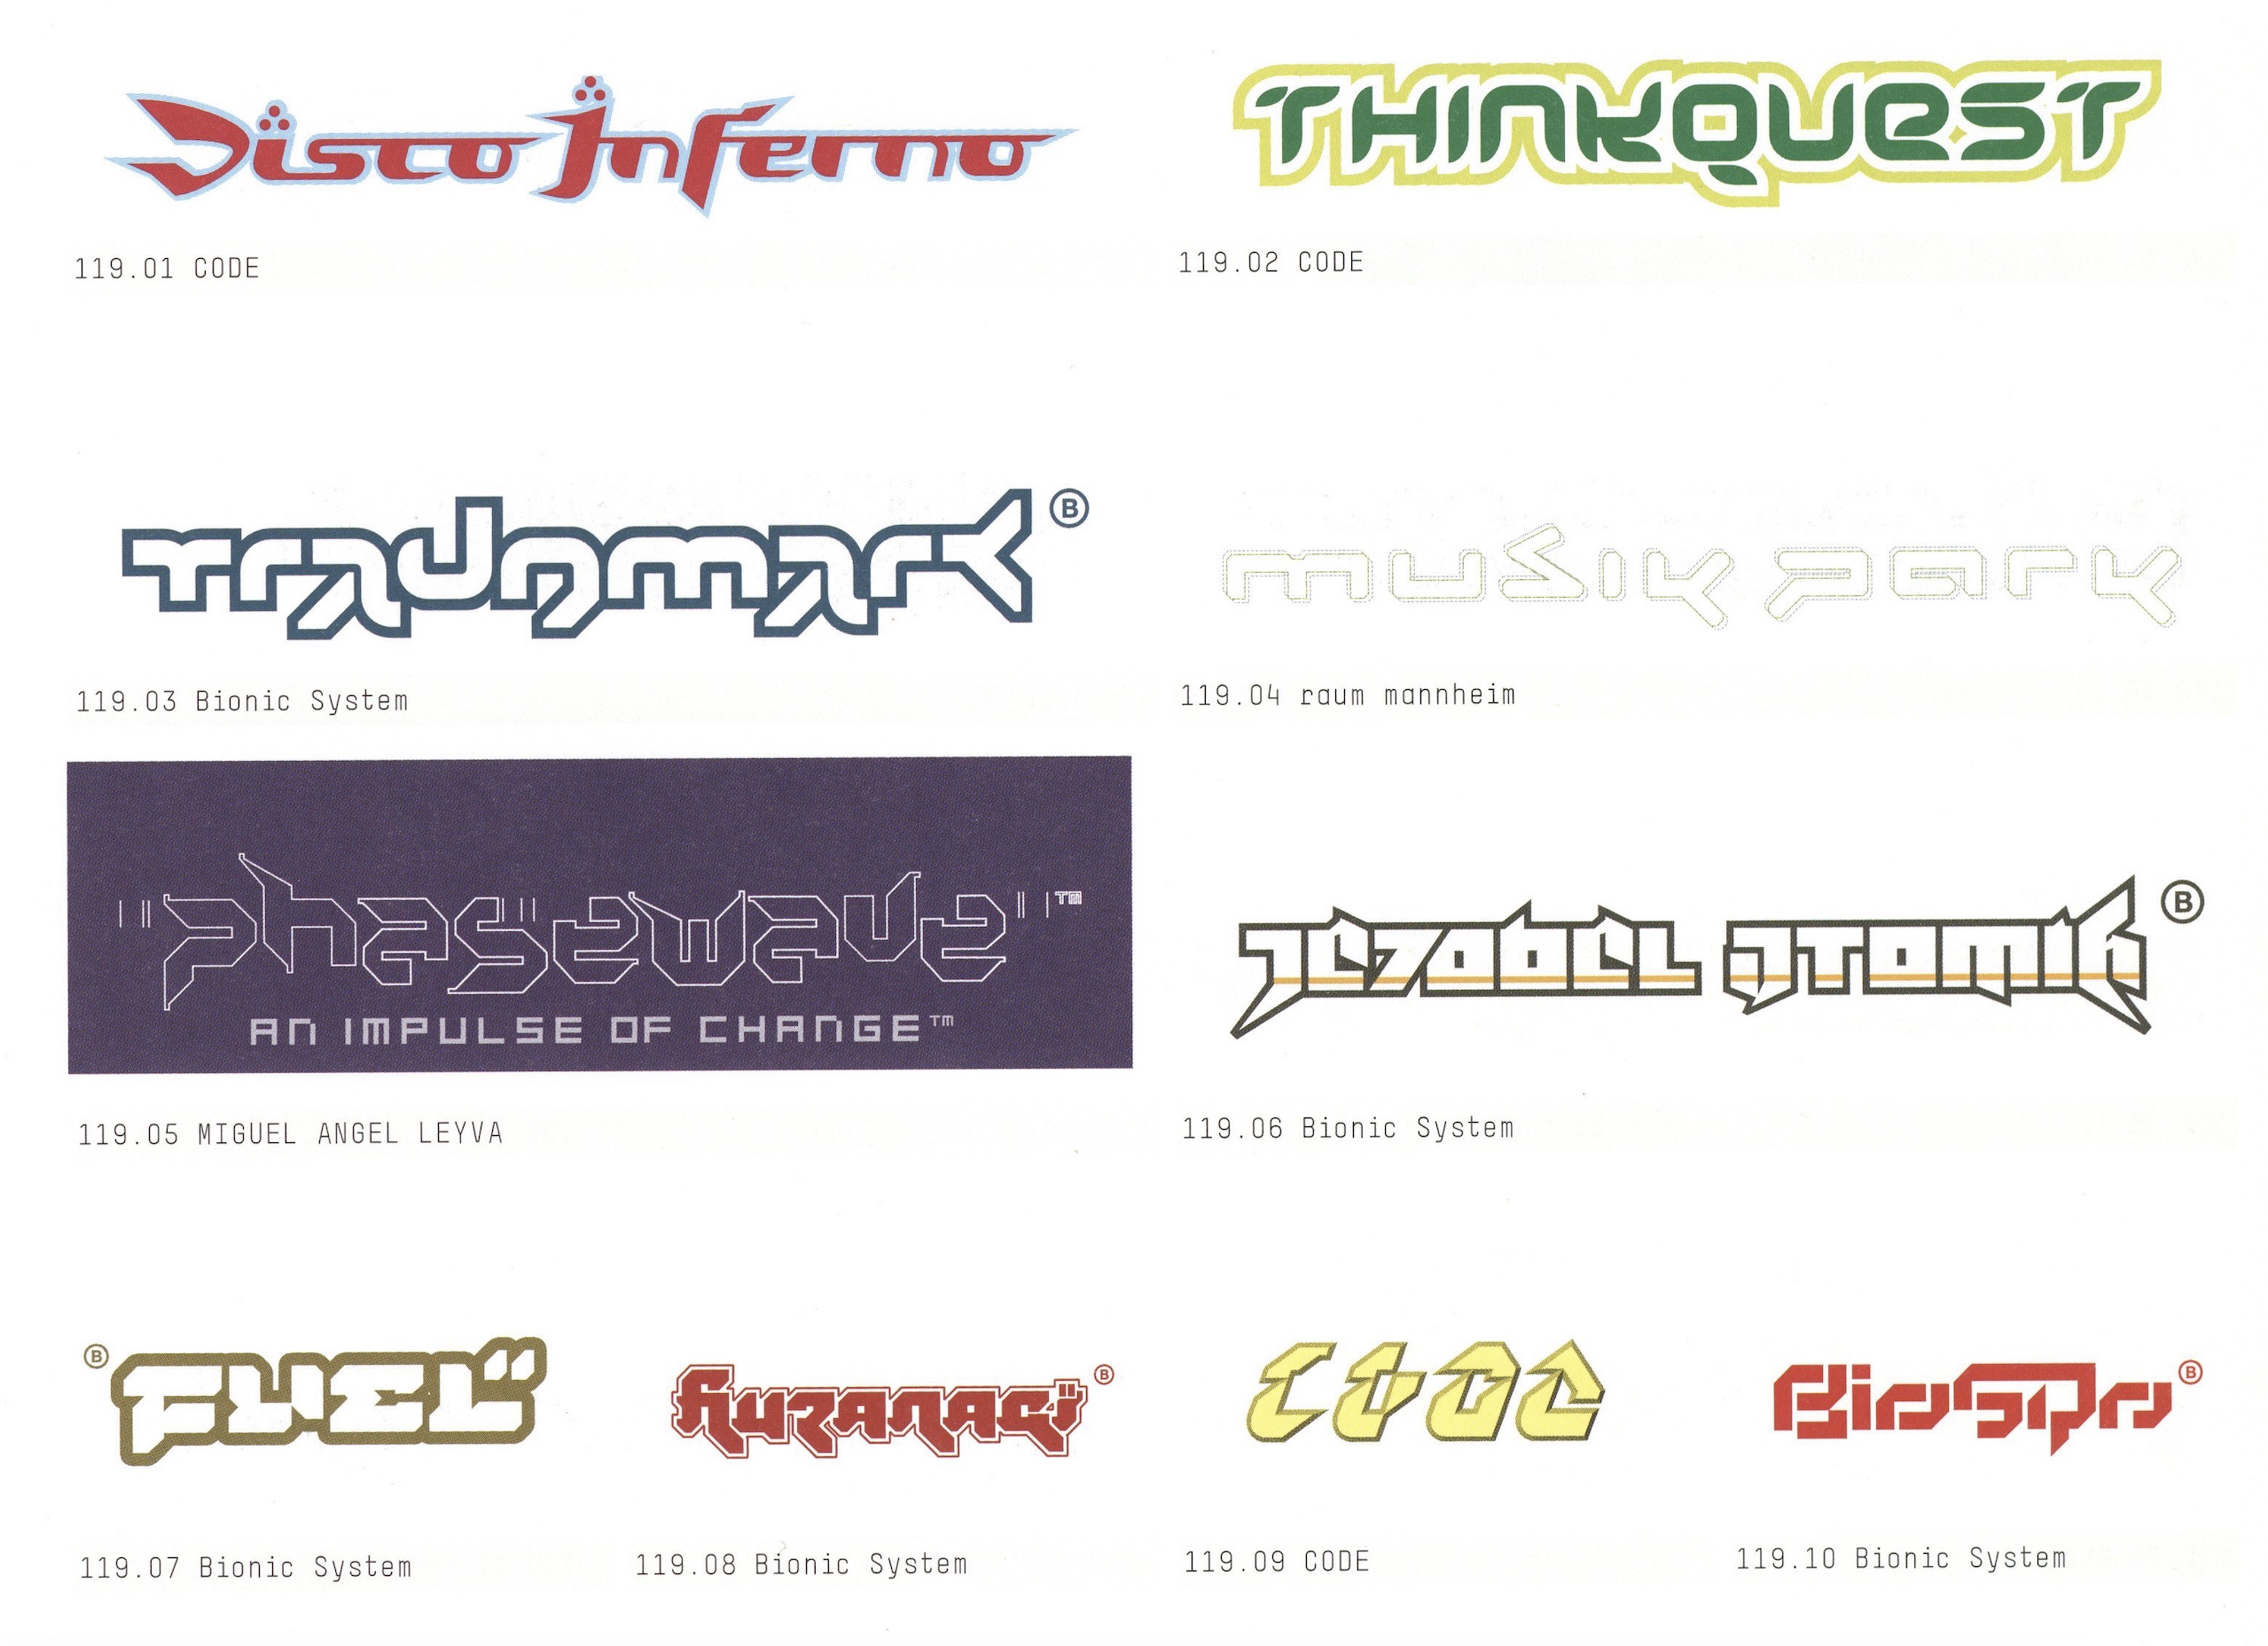 Y2K Logos, Y2K Aesthetic